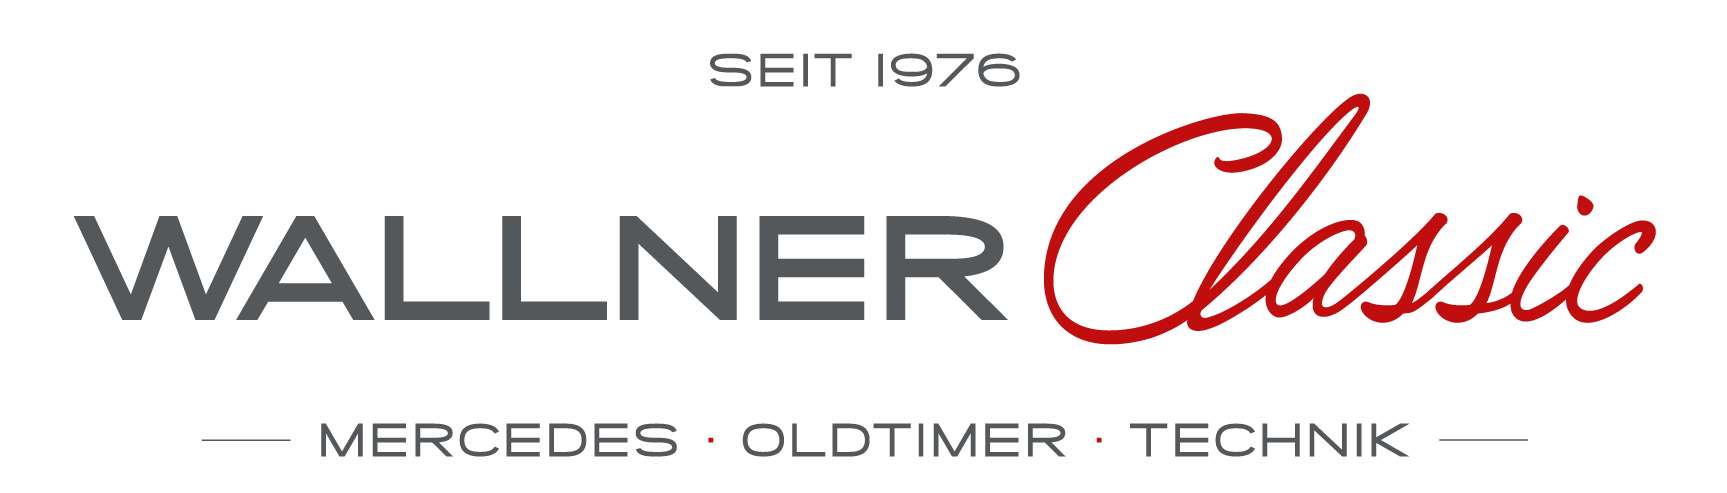 WALLNER Classic - Sammler wie Fahrenthusiasten schätzen dies an Wallner Classic und kommen seit über 45 Jahren zu uns.